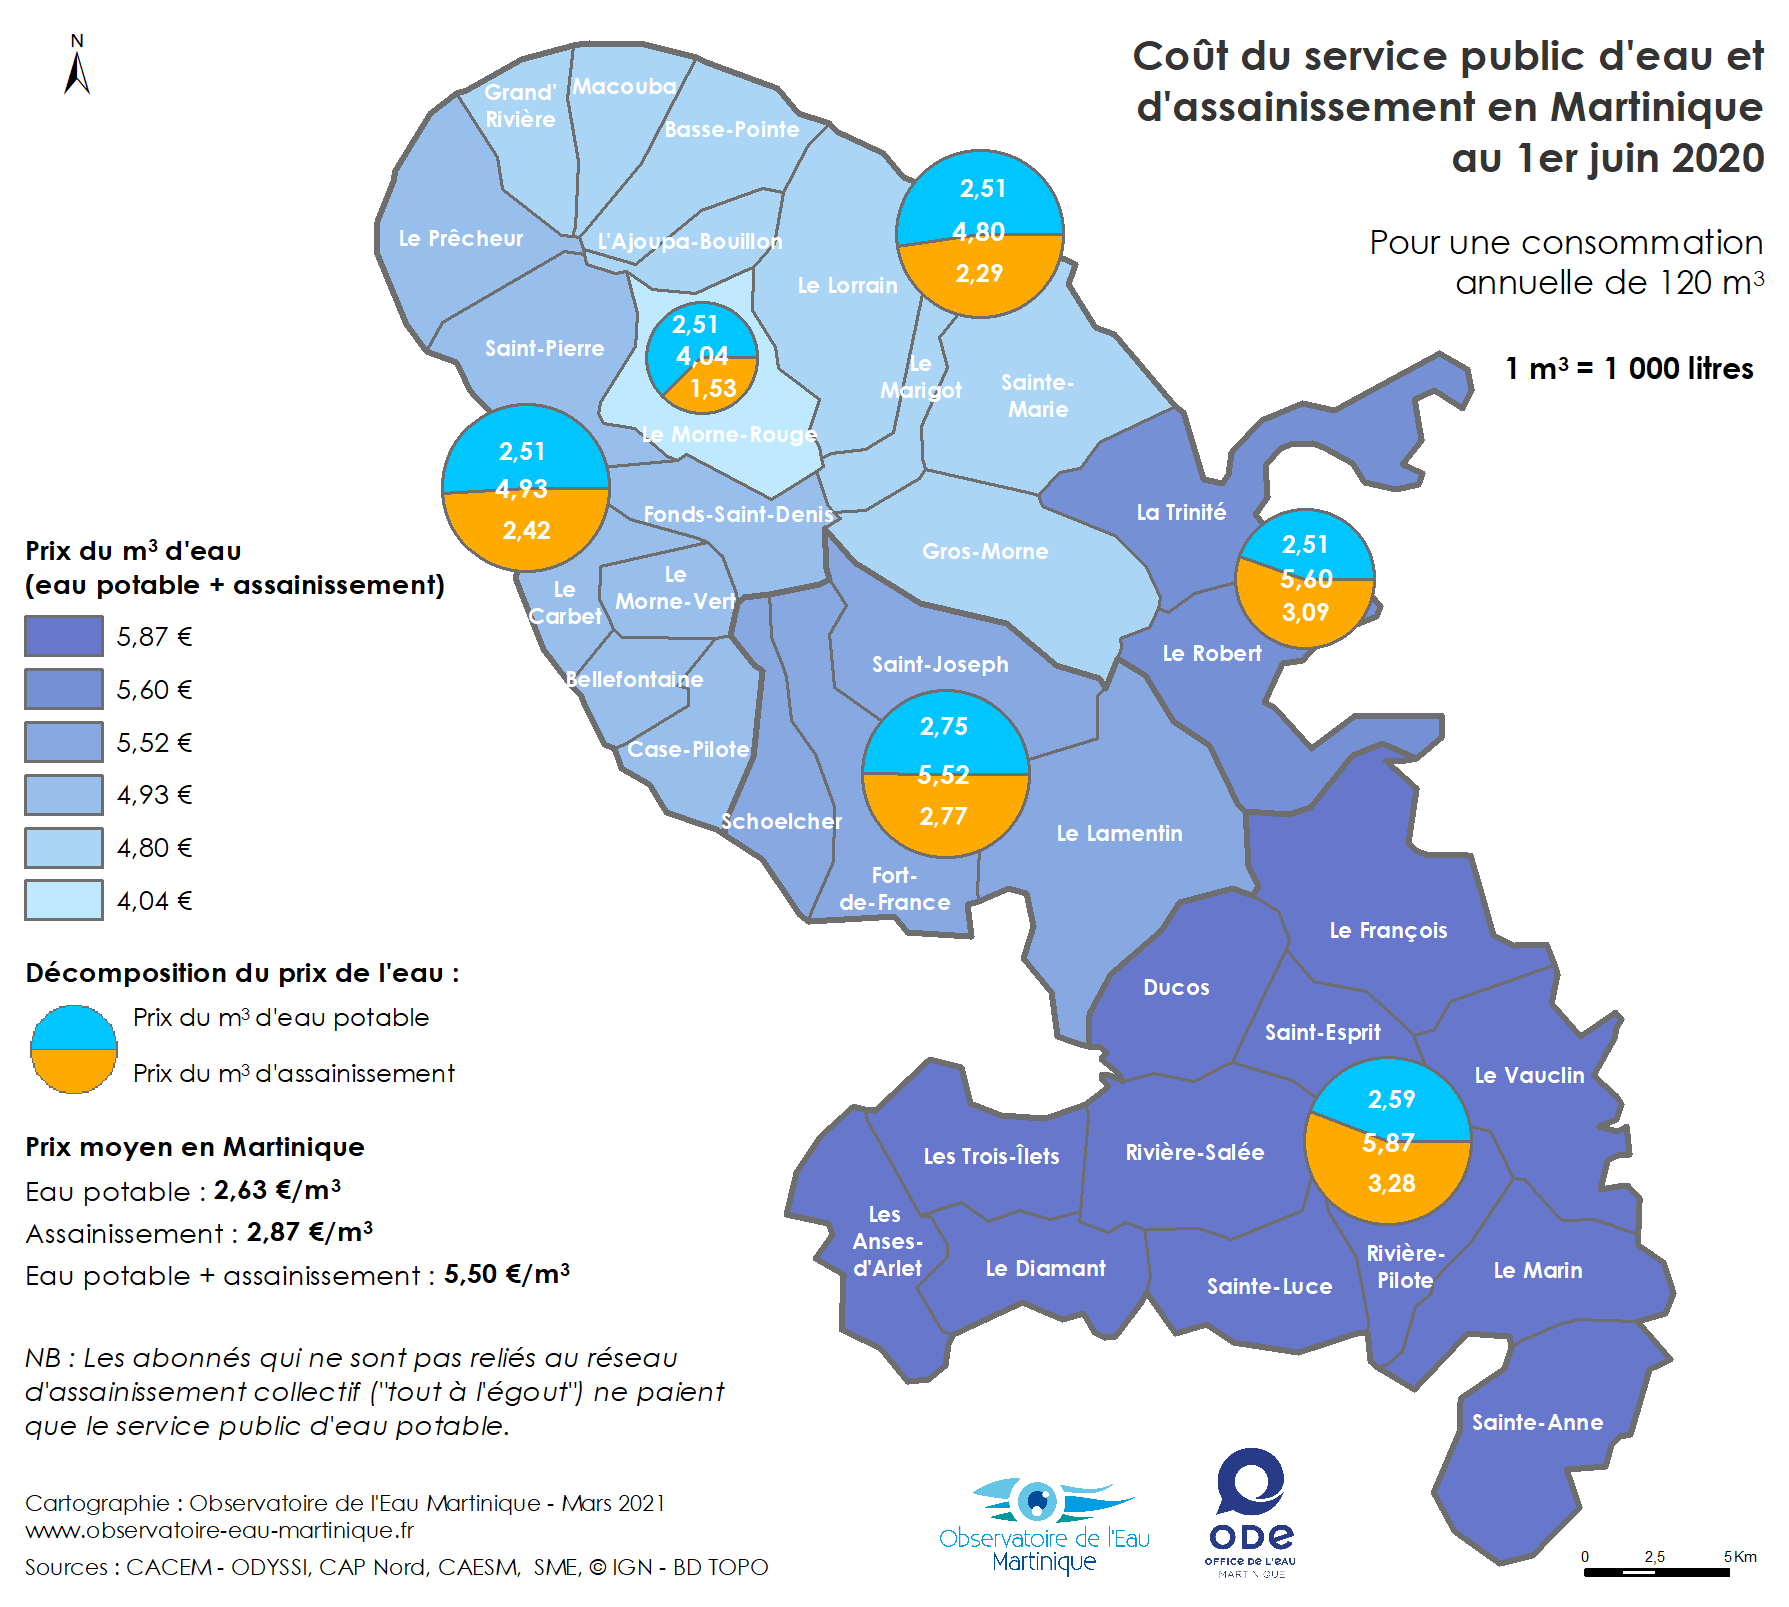 Coût des services publics d'eau et d'assainissement en Martinique au 1er juin 2020